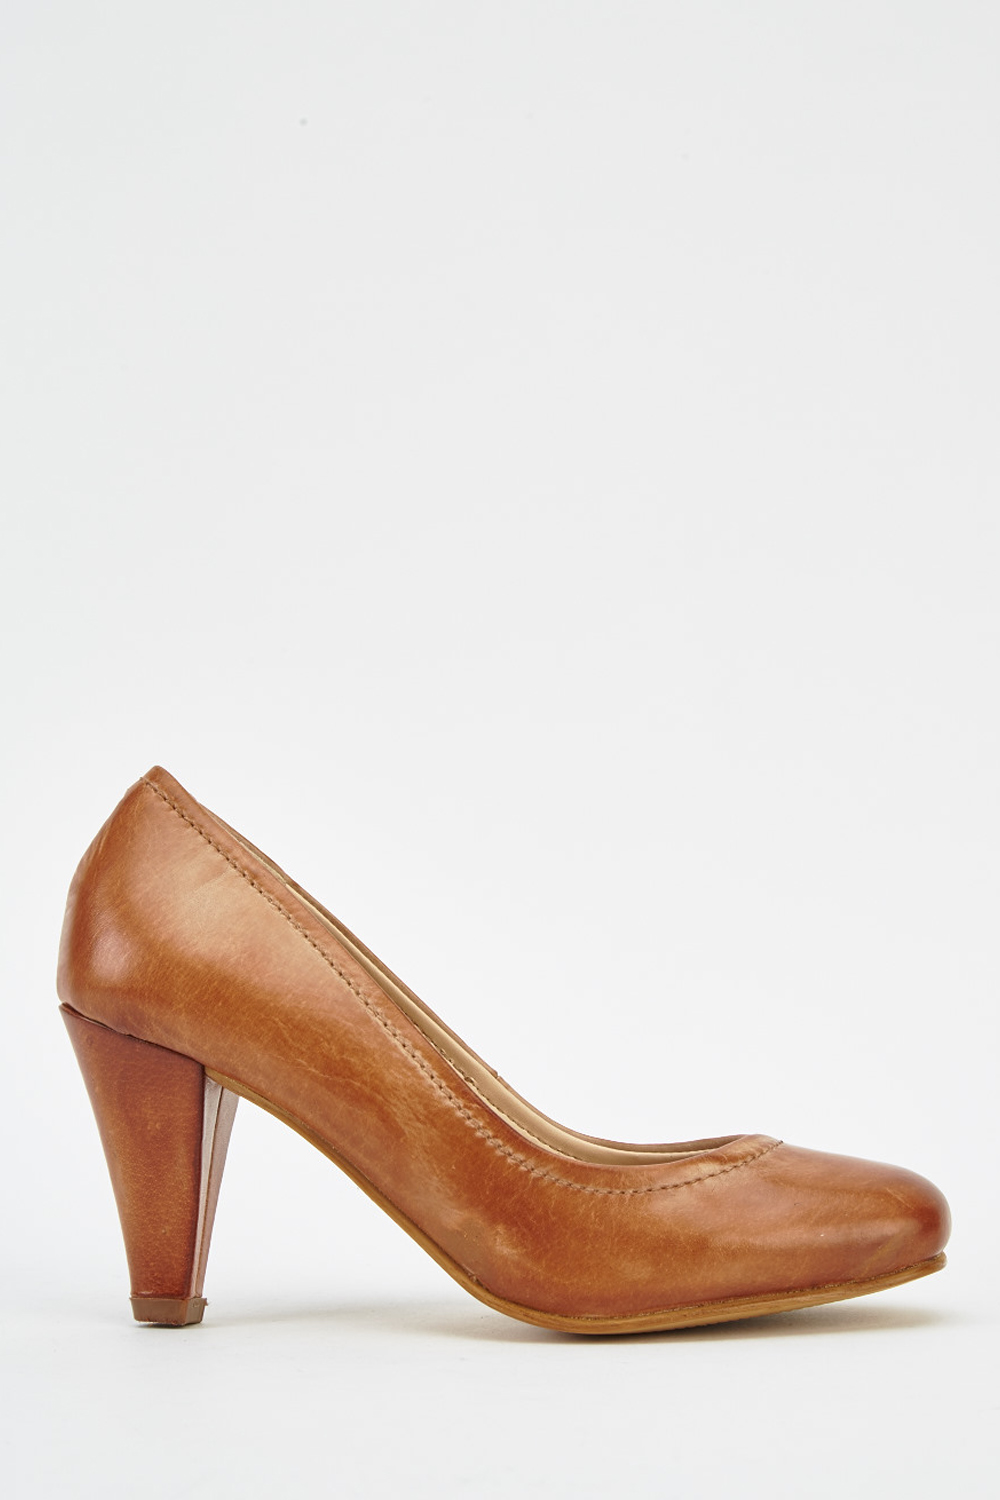 tan court shoes low heel